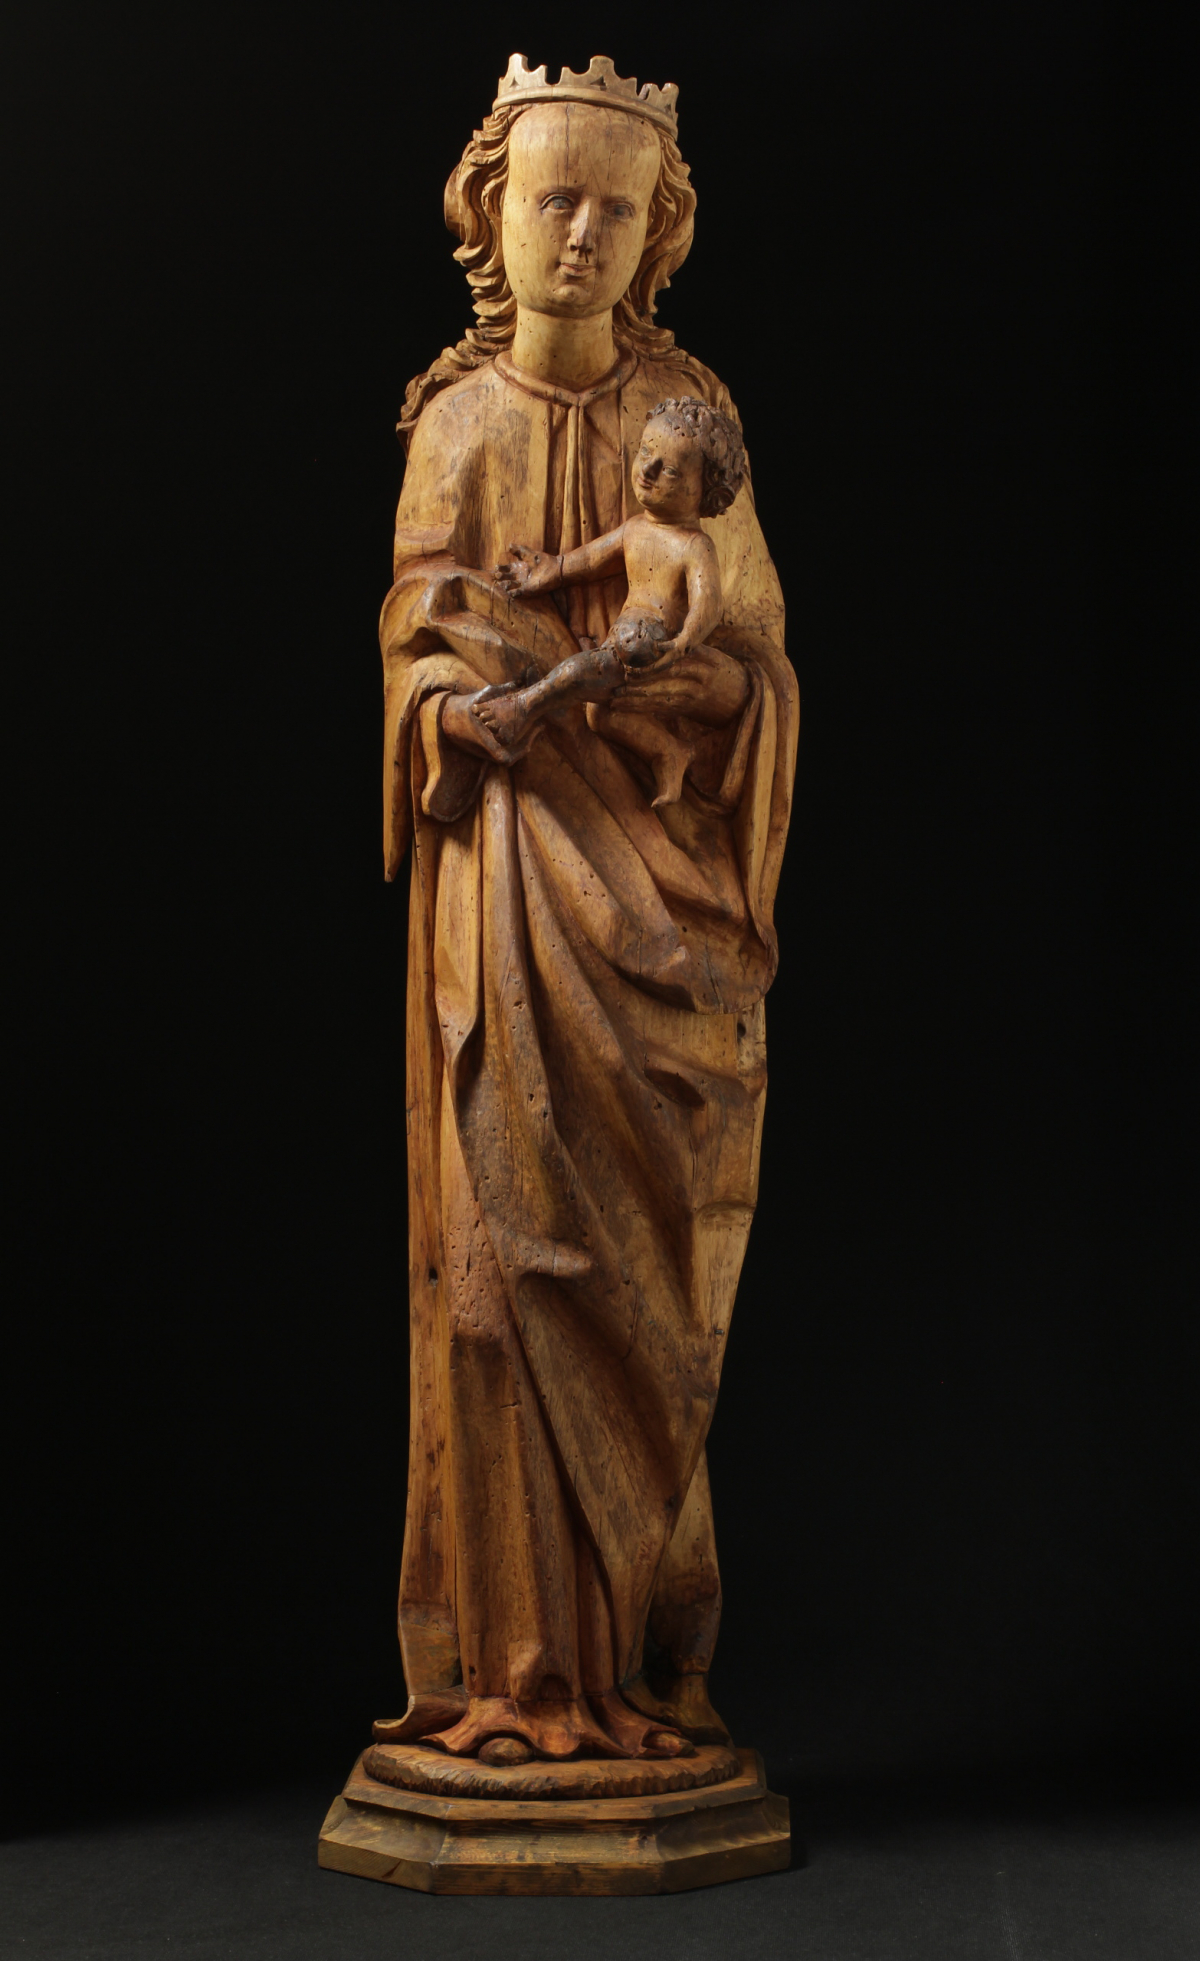 Neznámý autor, Madona, 1480 –1500, skulptura, dřevo polychromované, v.103 cm, neznačeno, Oblastní galerie Liberec, restaurátor: Mgr. Jakub Rafl